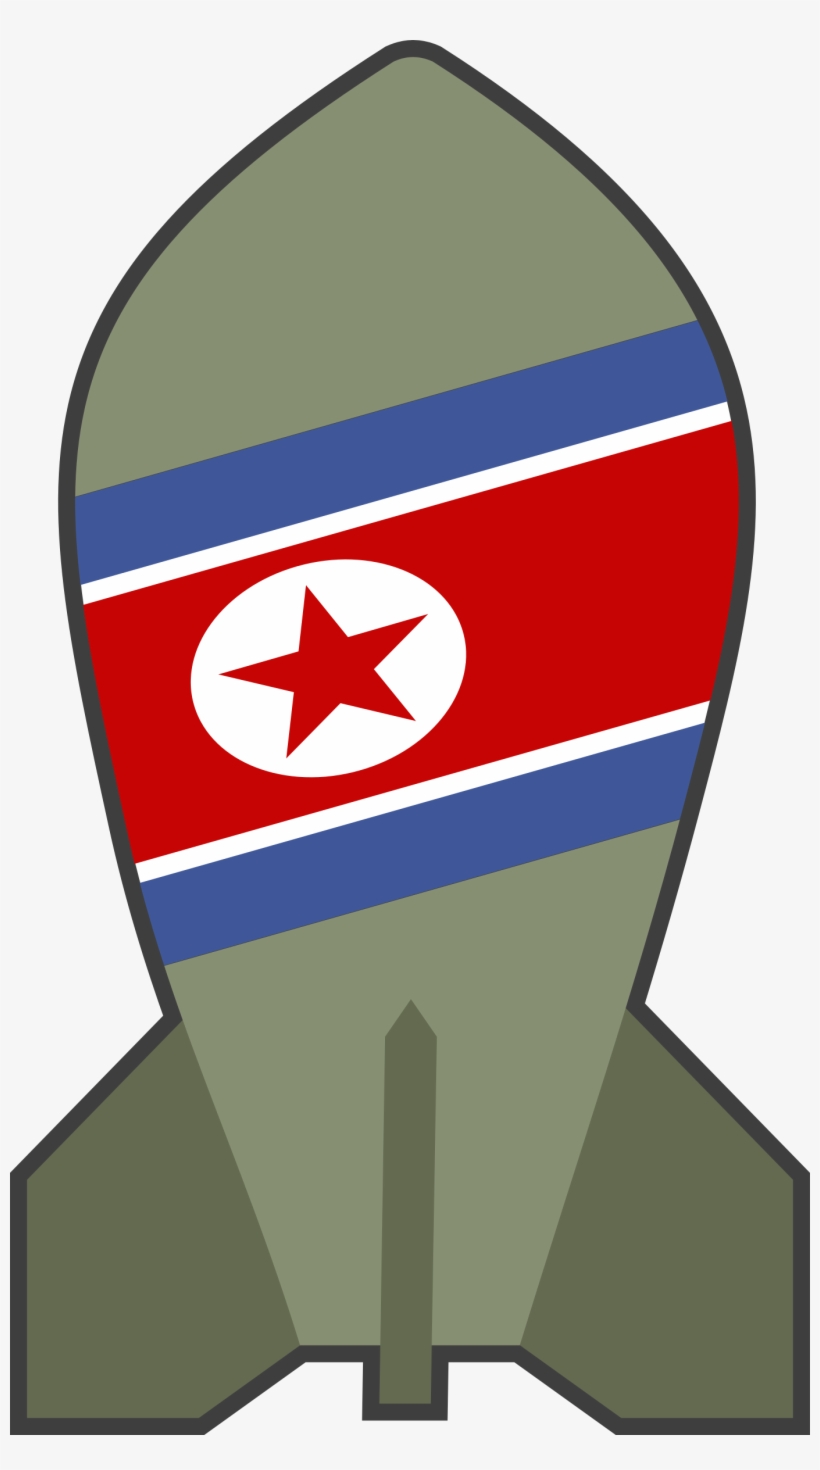 Image Free Png For Free Download On Mbtskoudsalg - North Korea Bomb Clipart, transparent png #206789